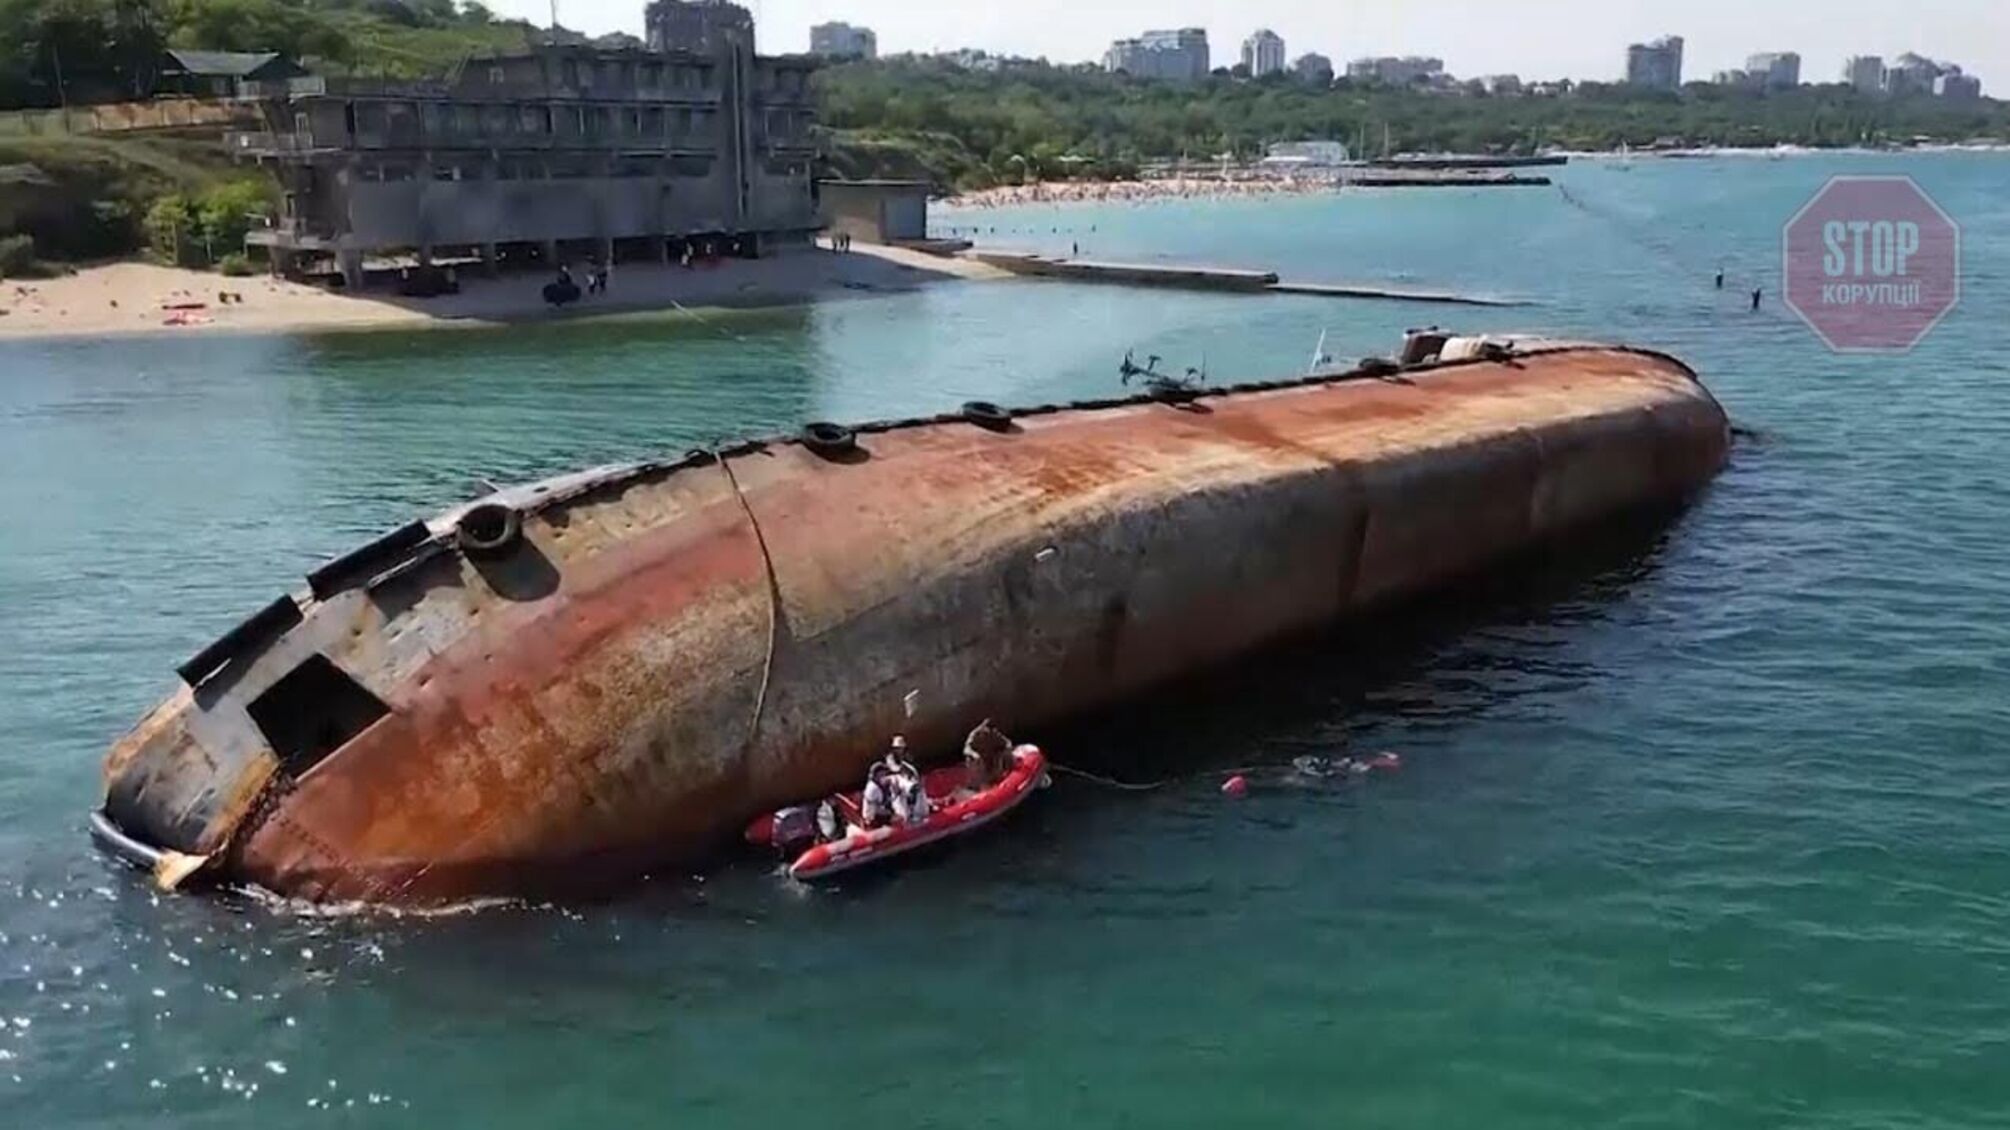 “Непідйомний” танкер “Делфі” можуть порізати, - голова Одеської облдержадміністрації